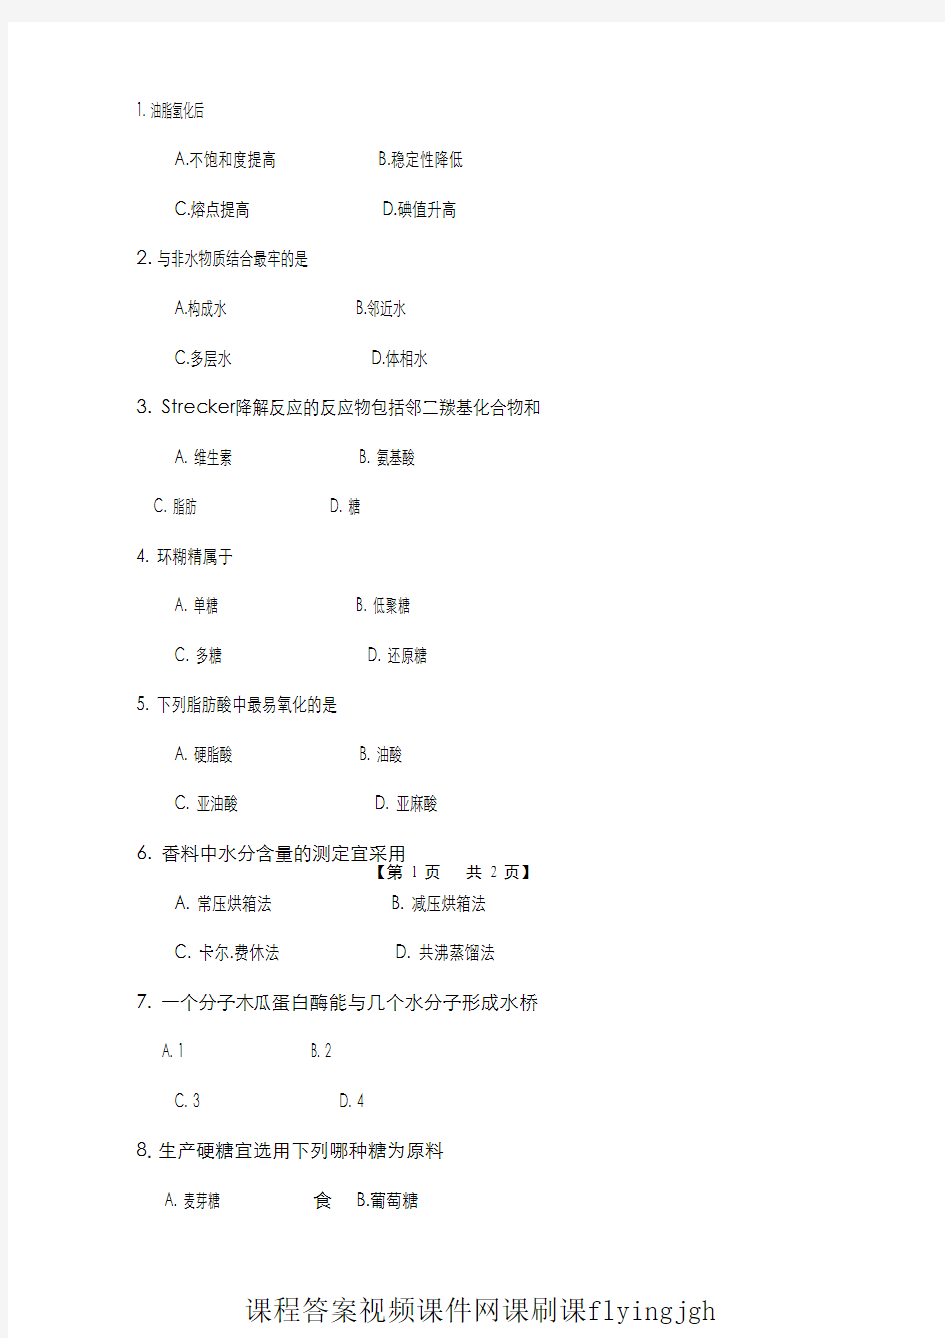 中国大学MOOC慕课(1)--试卷1网课刷课